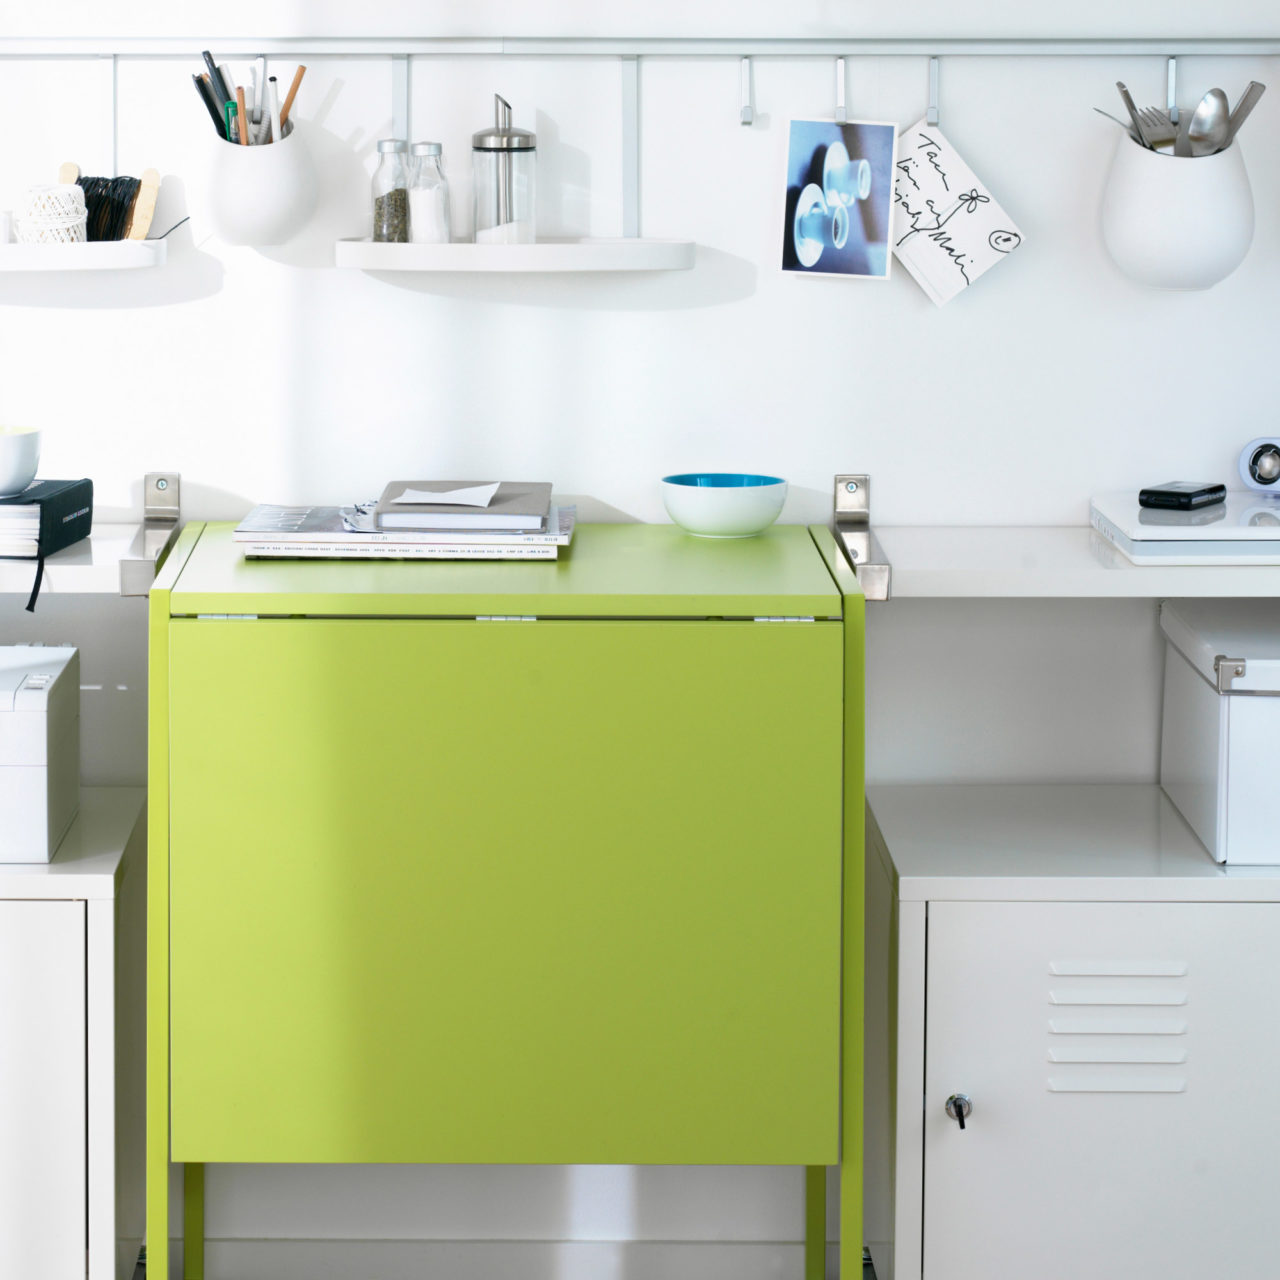 Pared blanca con mesa verde plegable y estantes, armarios metálicos y espacio de almacenaje blanco.